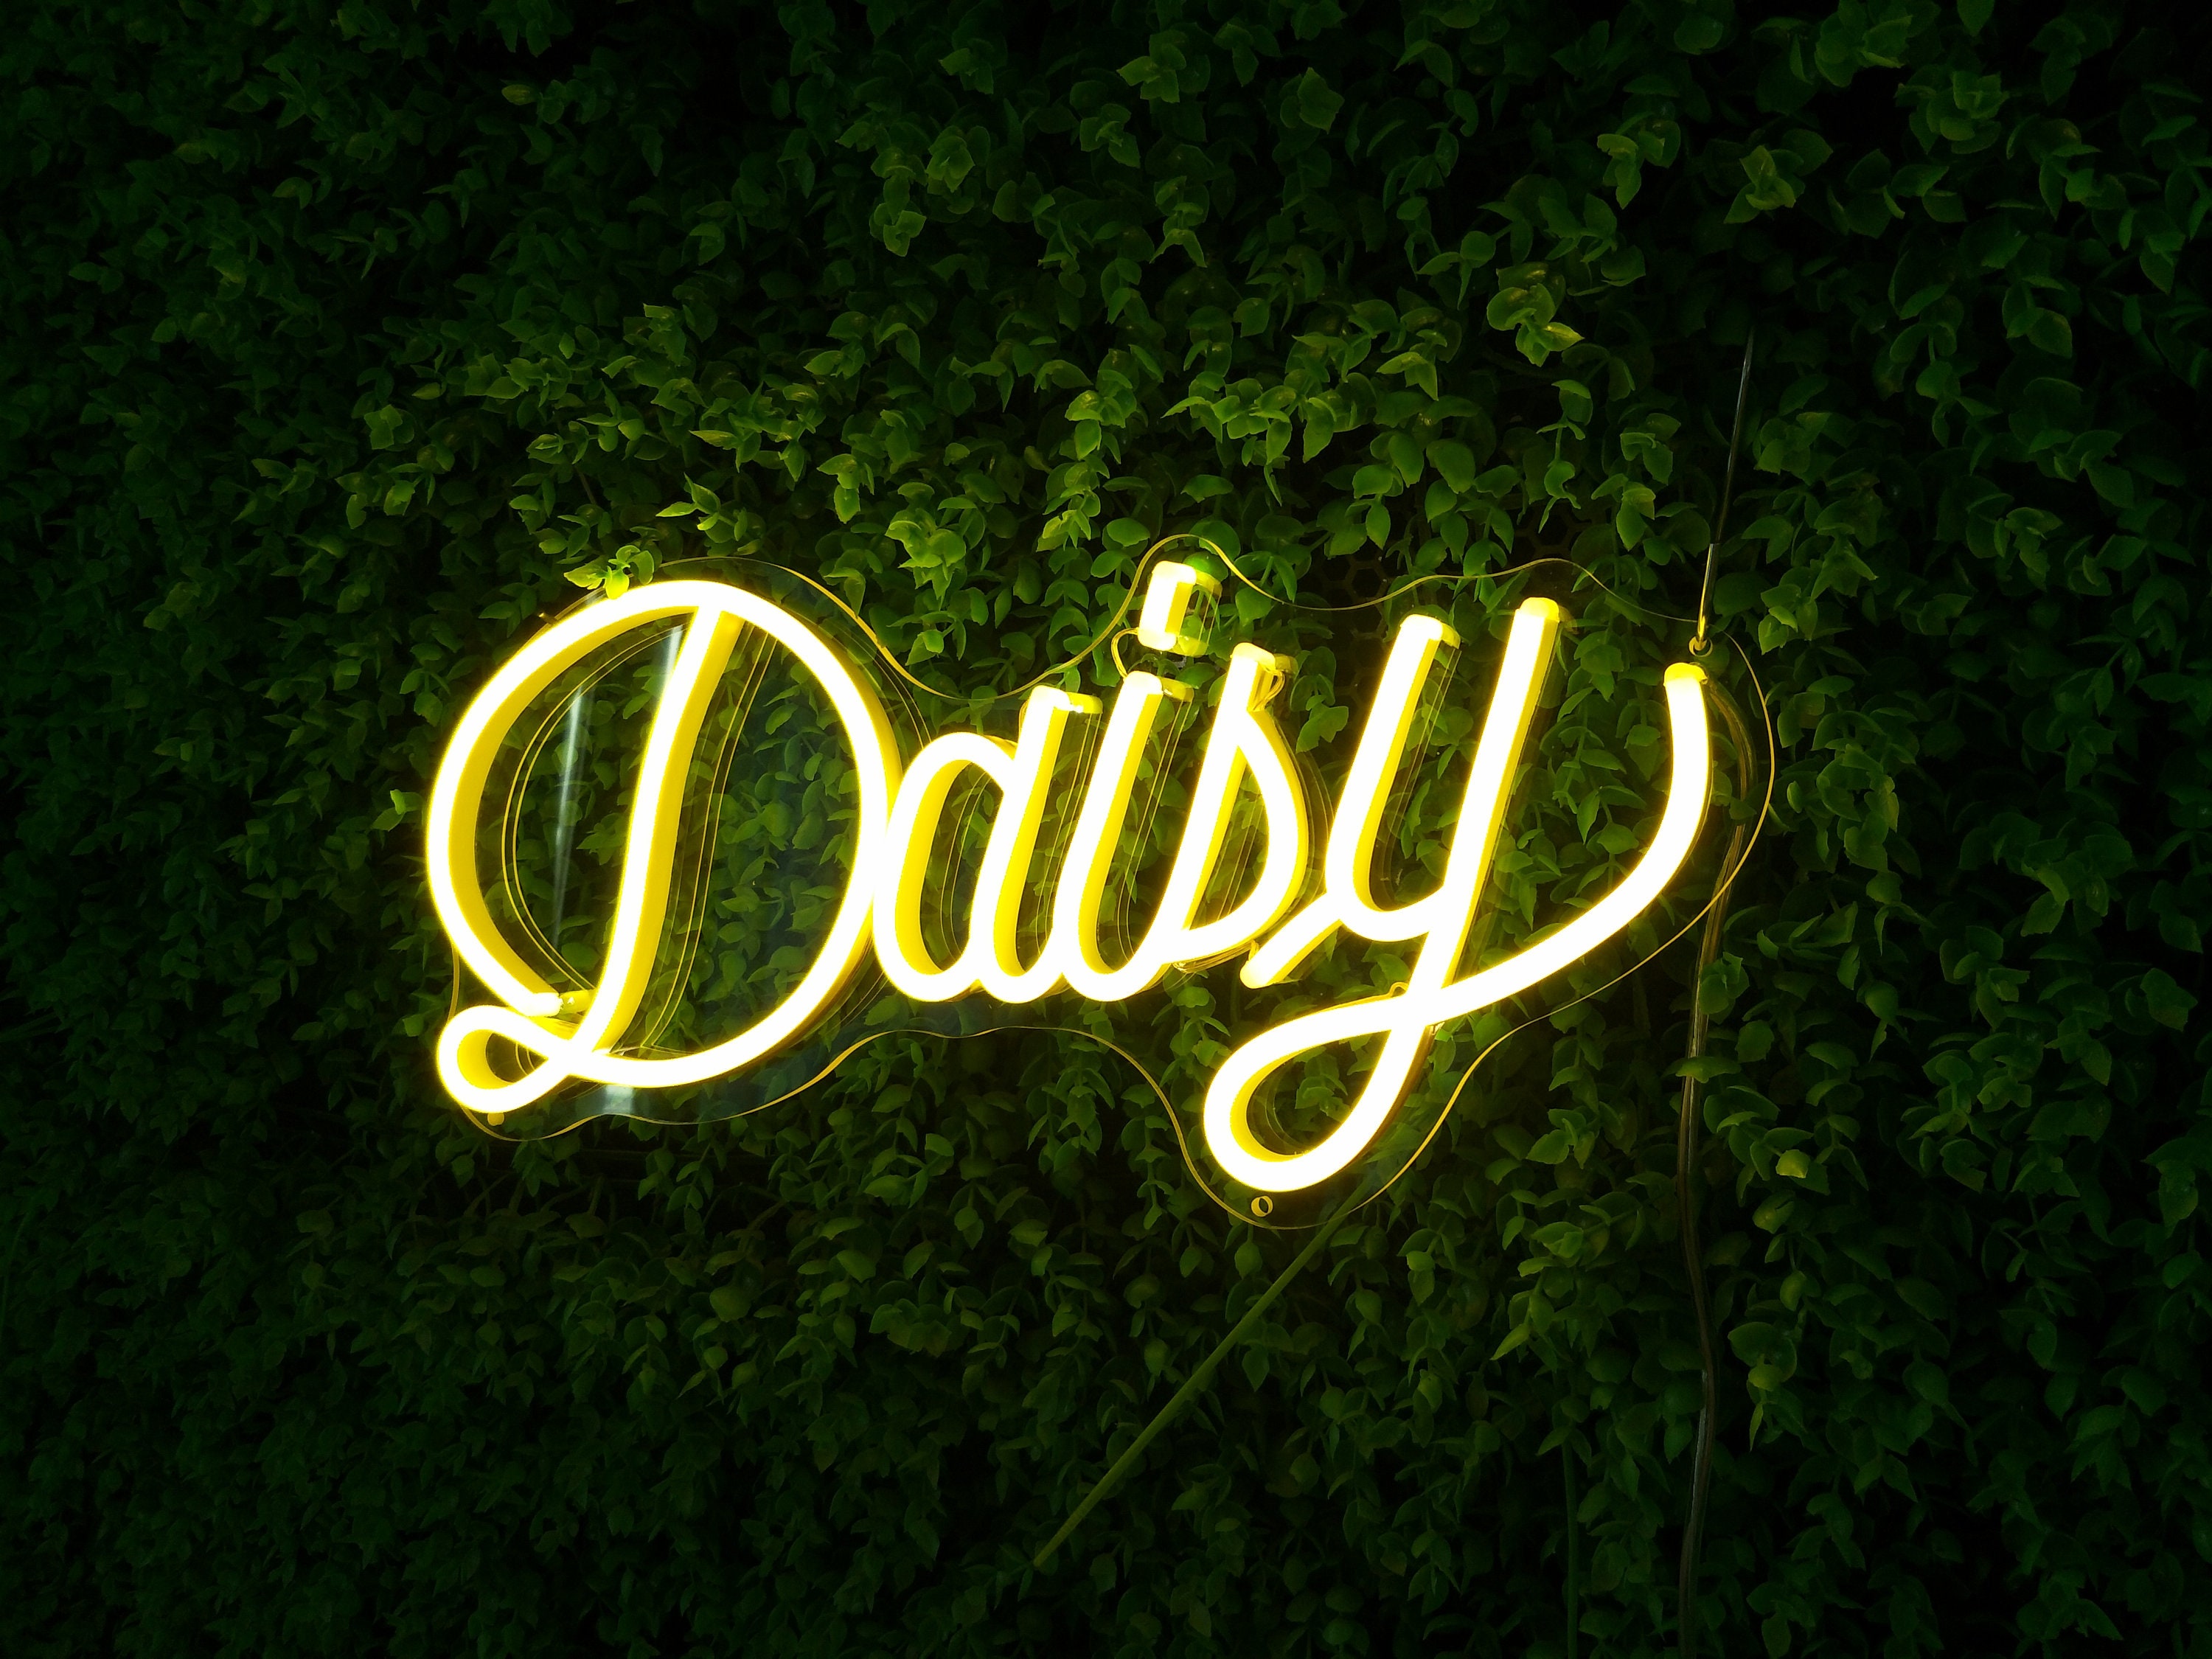 Daisy' Mini Glass Neon Sign